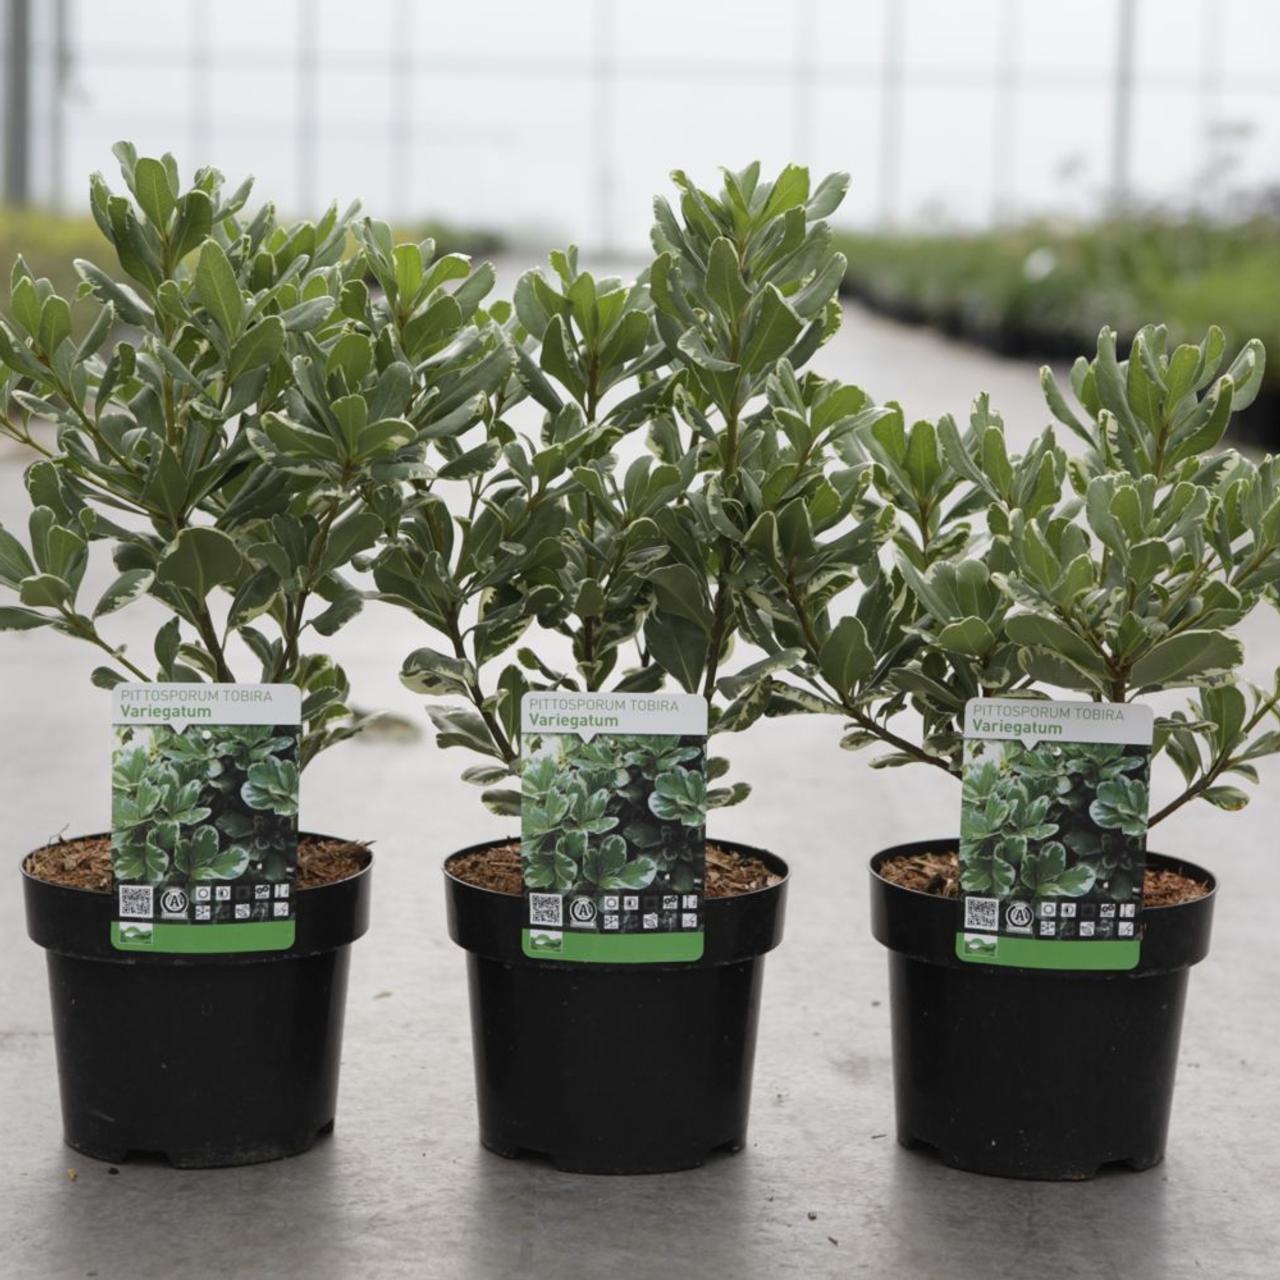 pittosporum tob. 'variegatum' - kaufen sie pflanzen bei coolplants